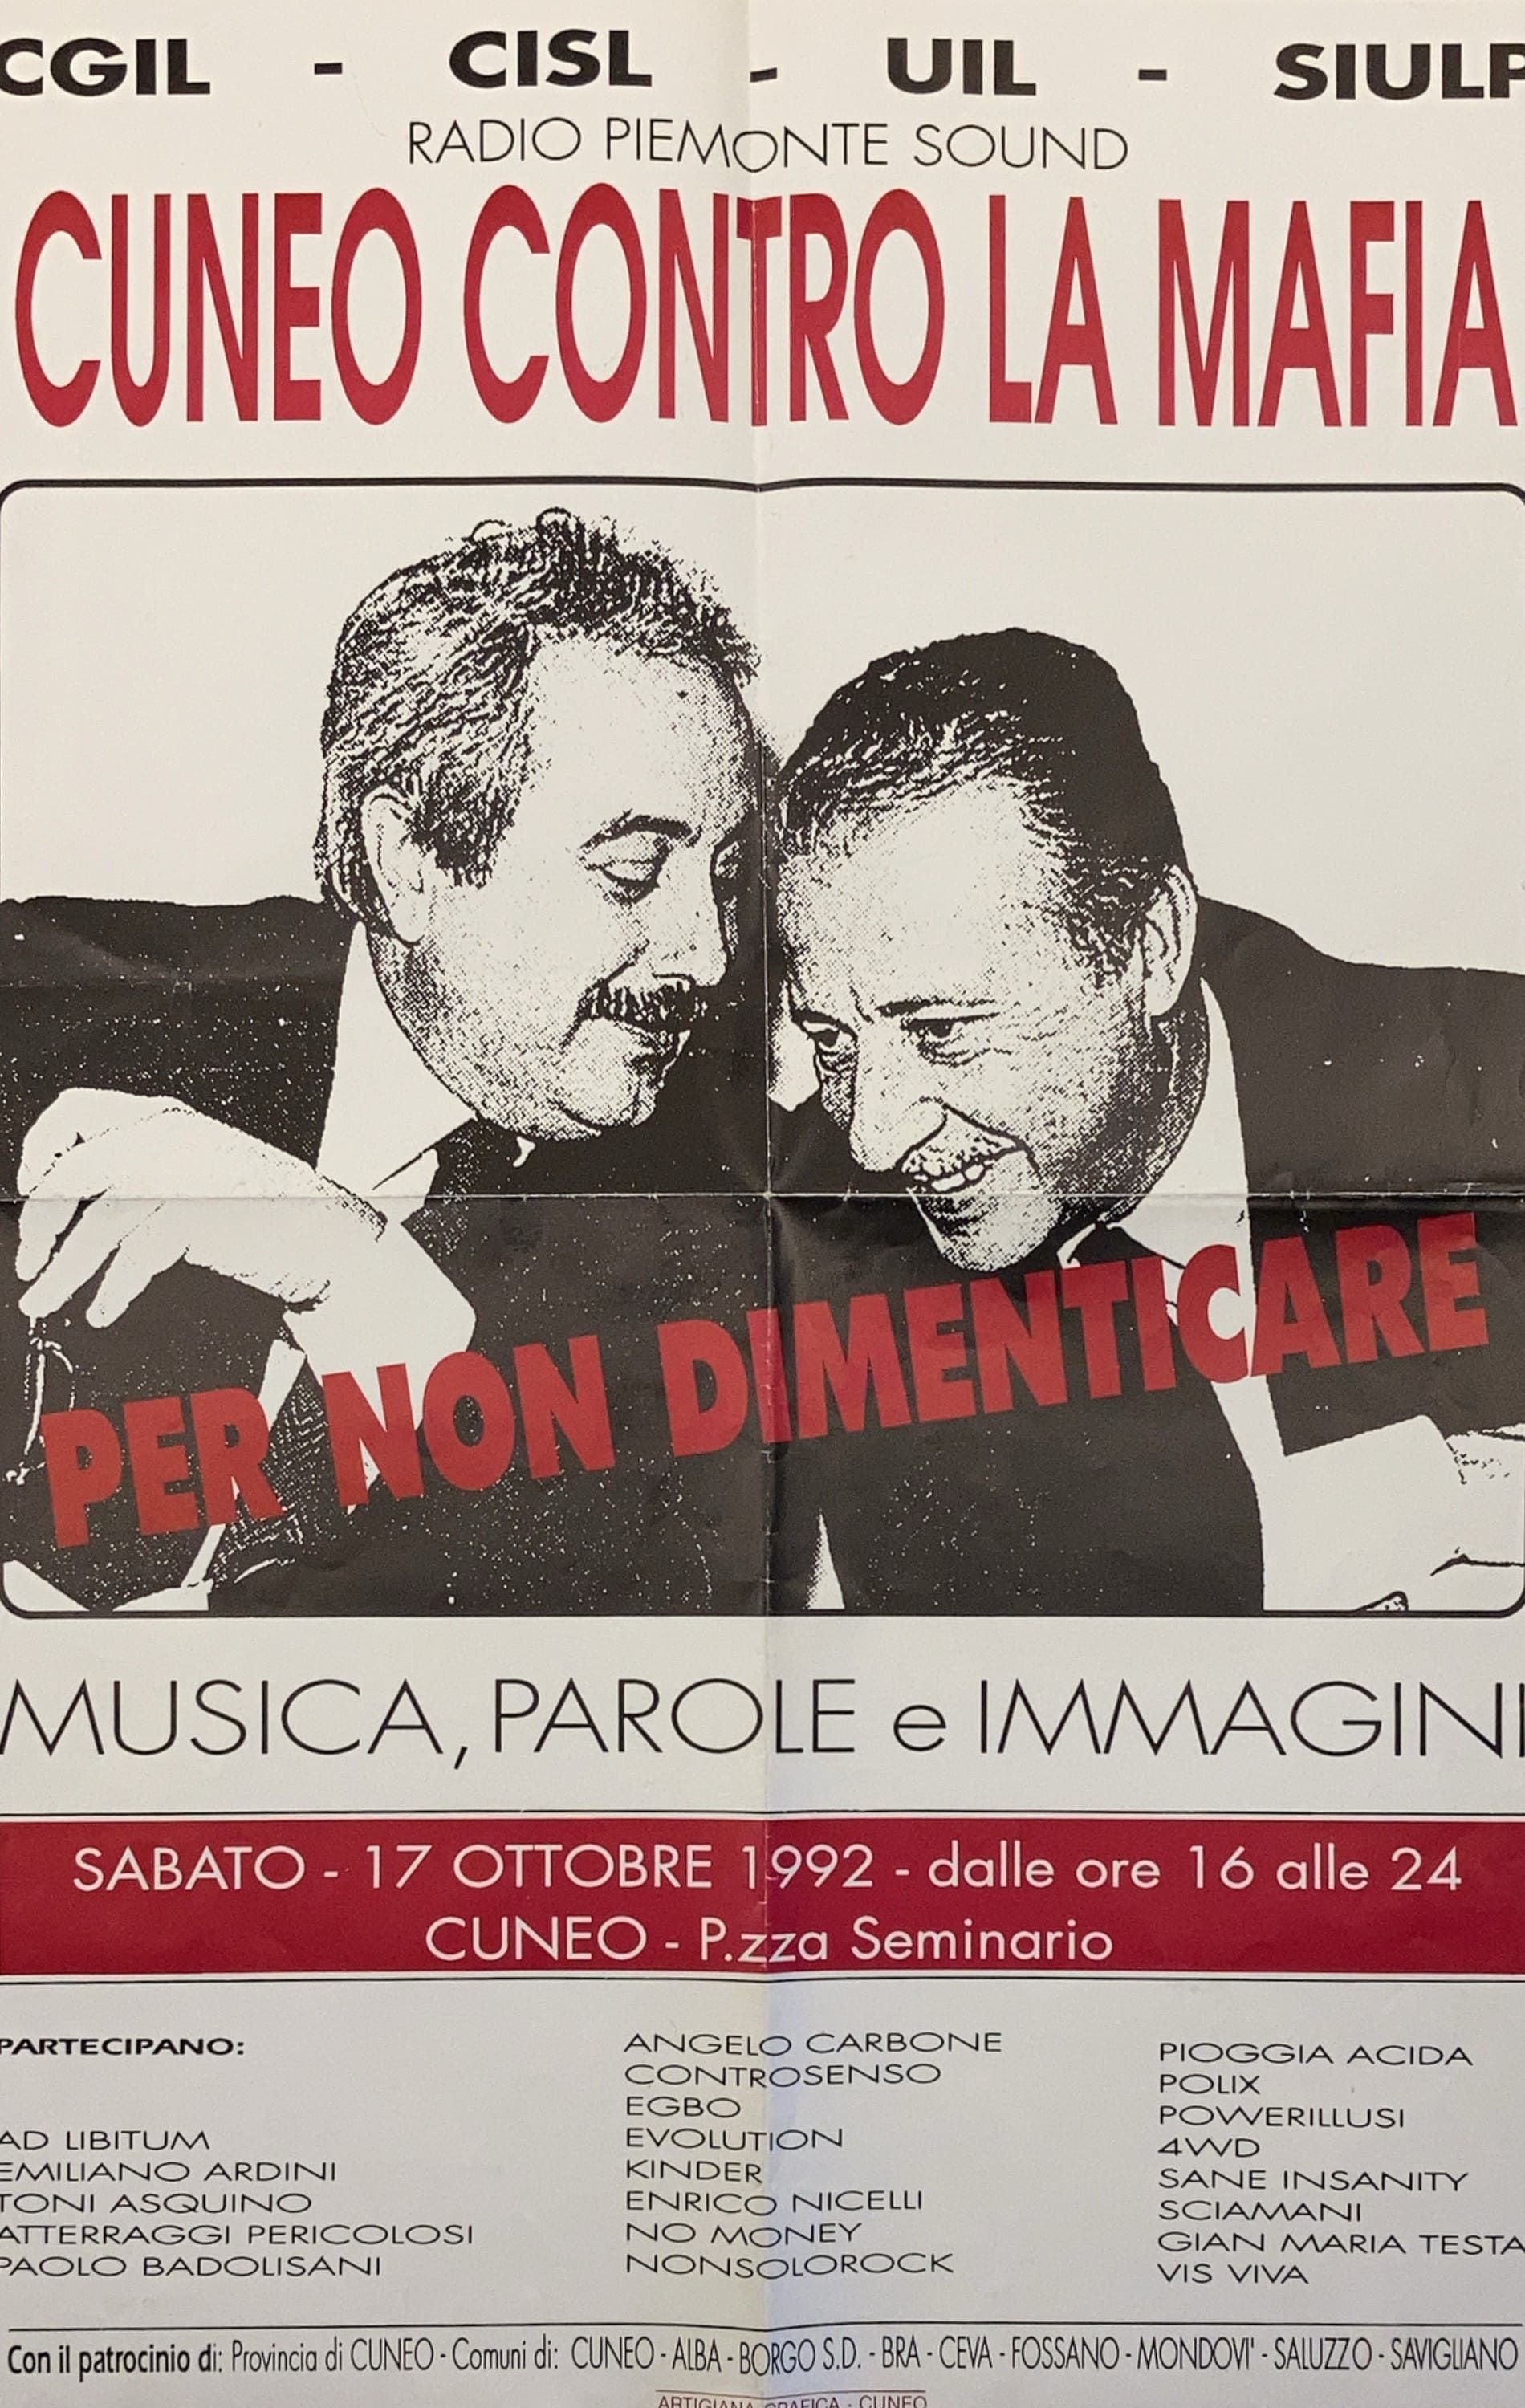 1992 - Cuneo contro la mafia